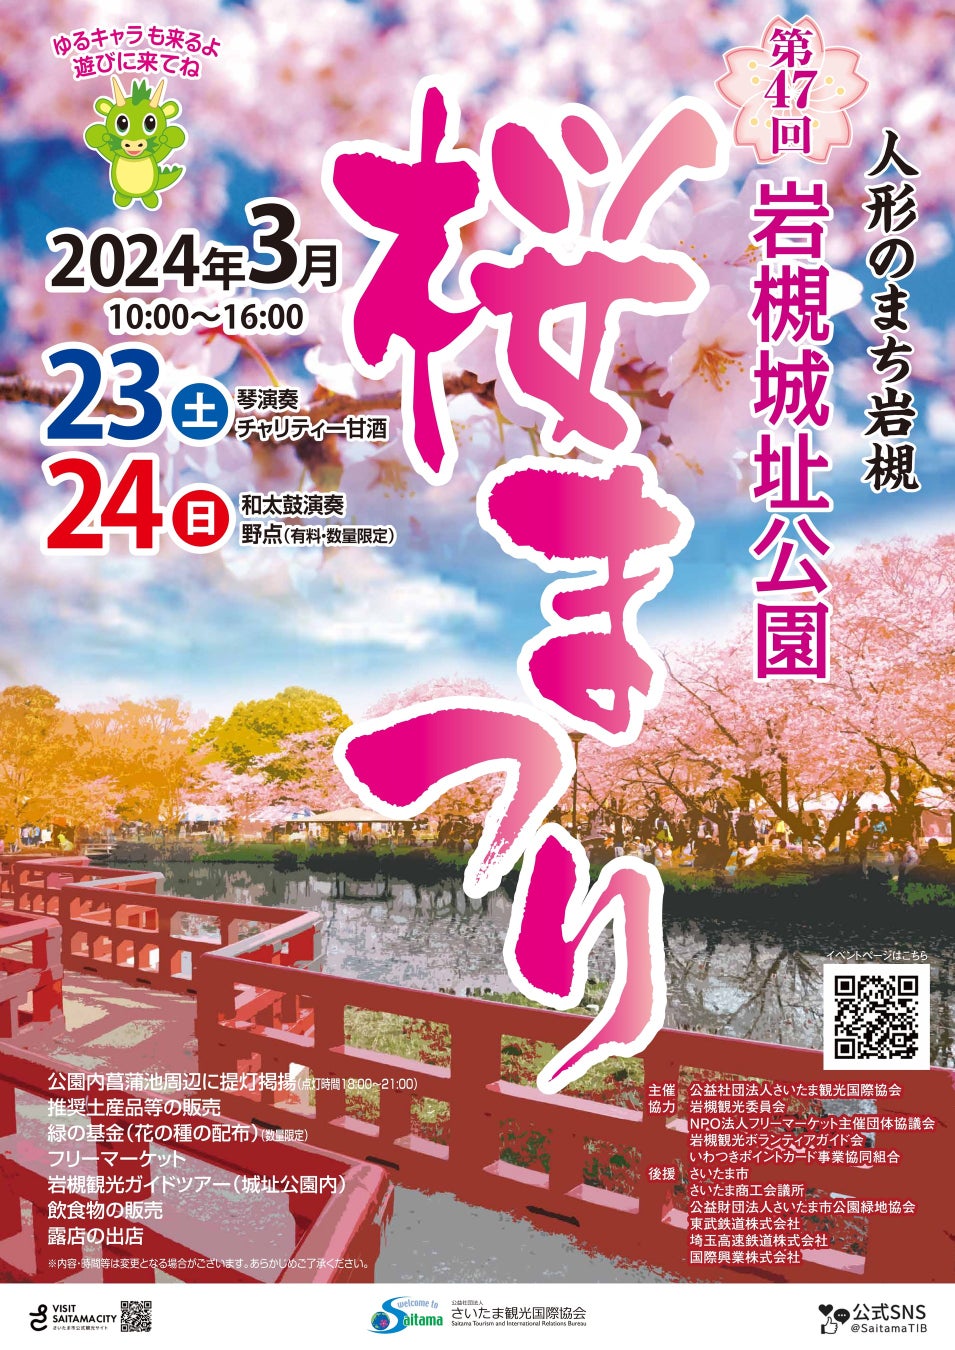 新年度に向けたご褒美タイムを。おふろcafé yusaが「春の新生活応援キャンペーン！」を開催。マッサージルーム「なごみ庵」もオープン。